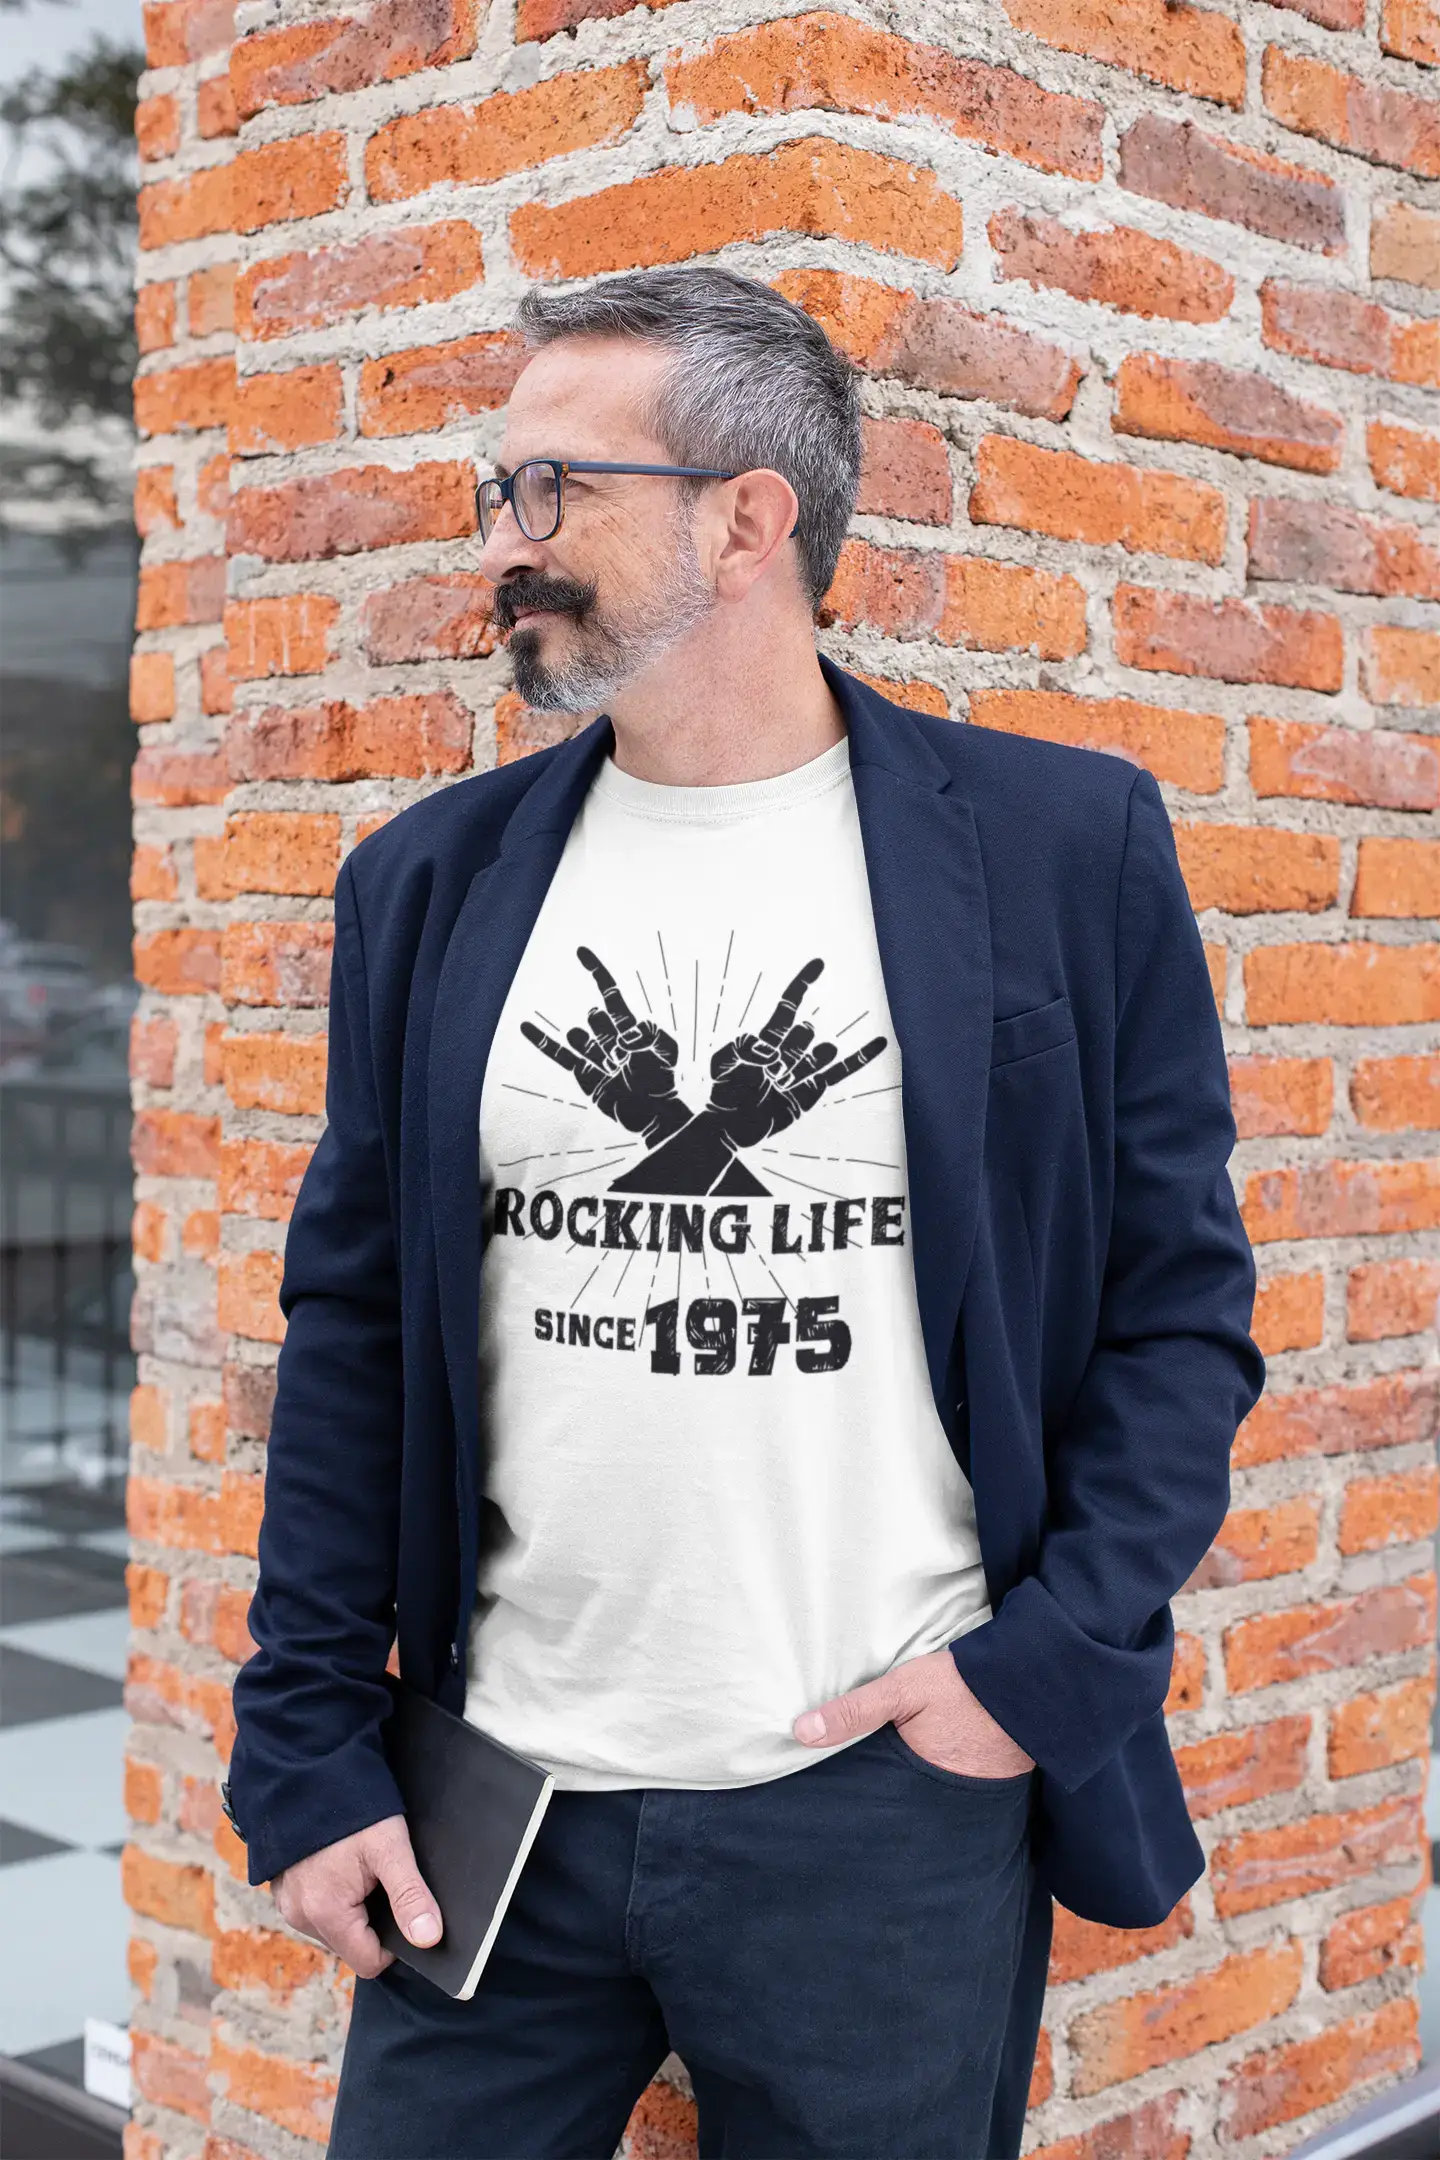 Rocking Life Since 1975 Herren T-Shirt Weiß Geburtstagsgeschenk 00400